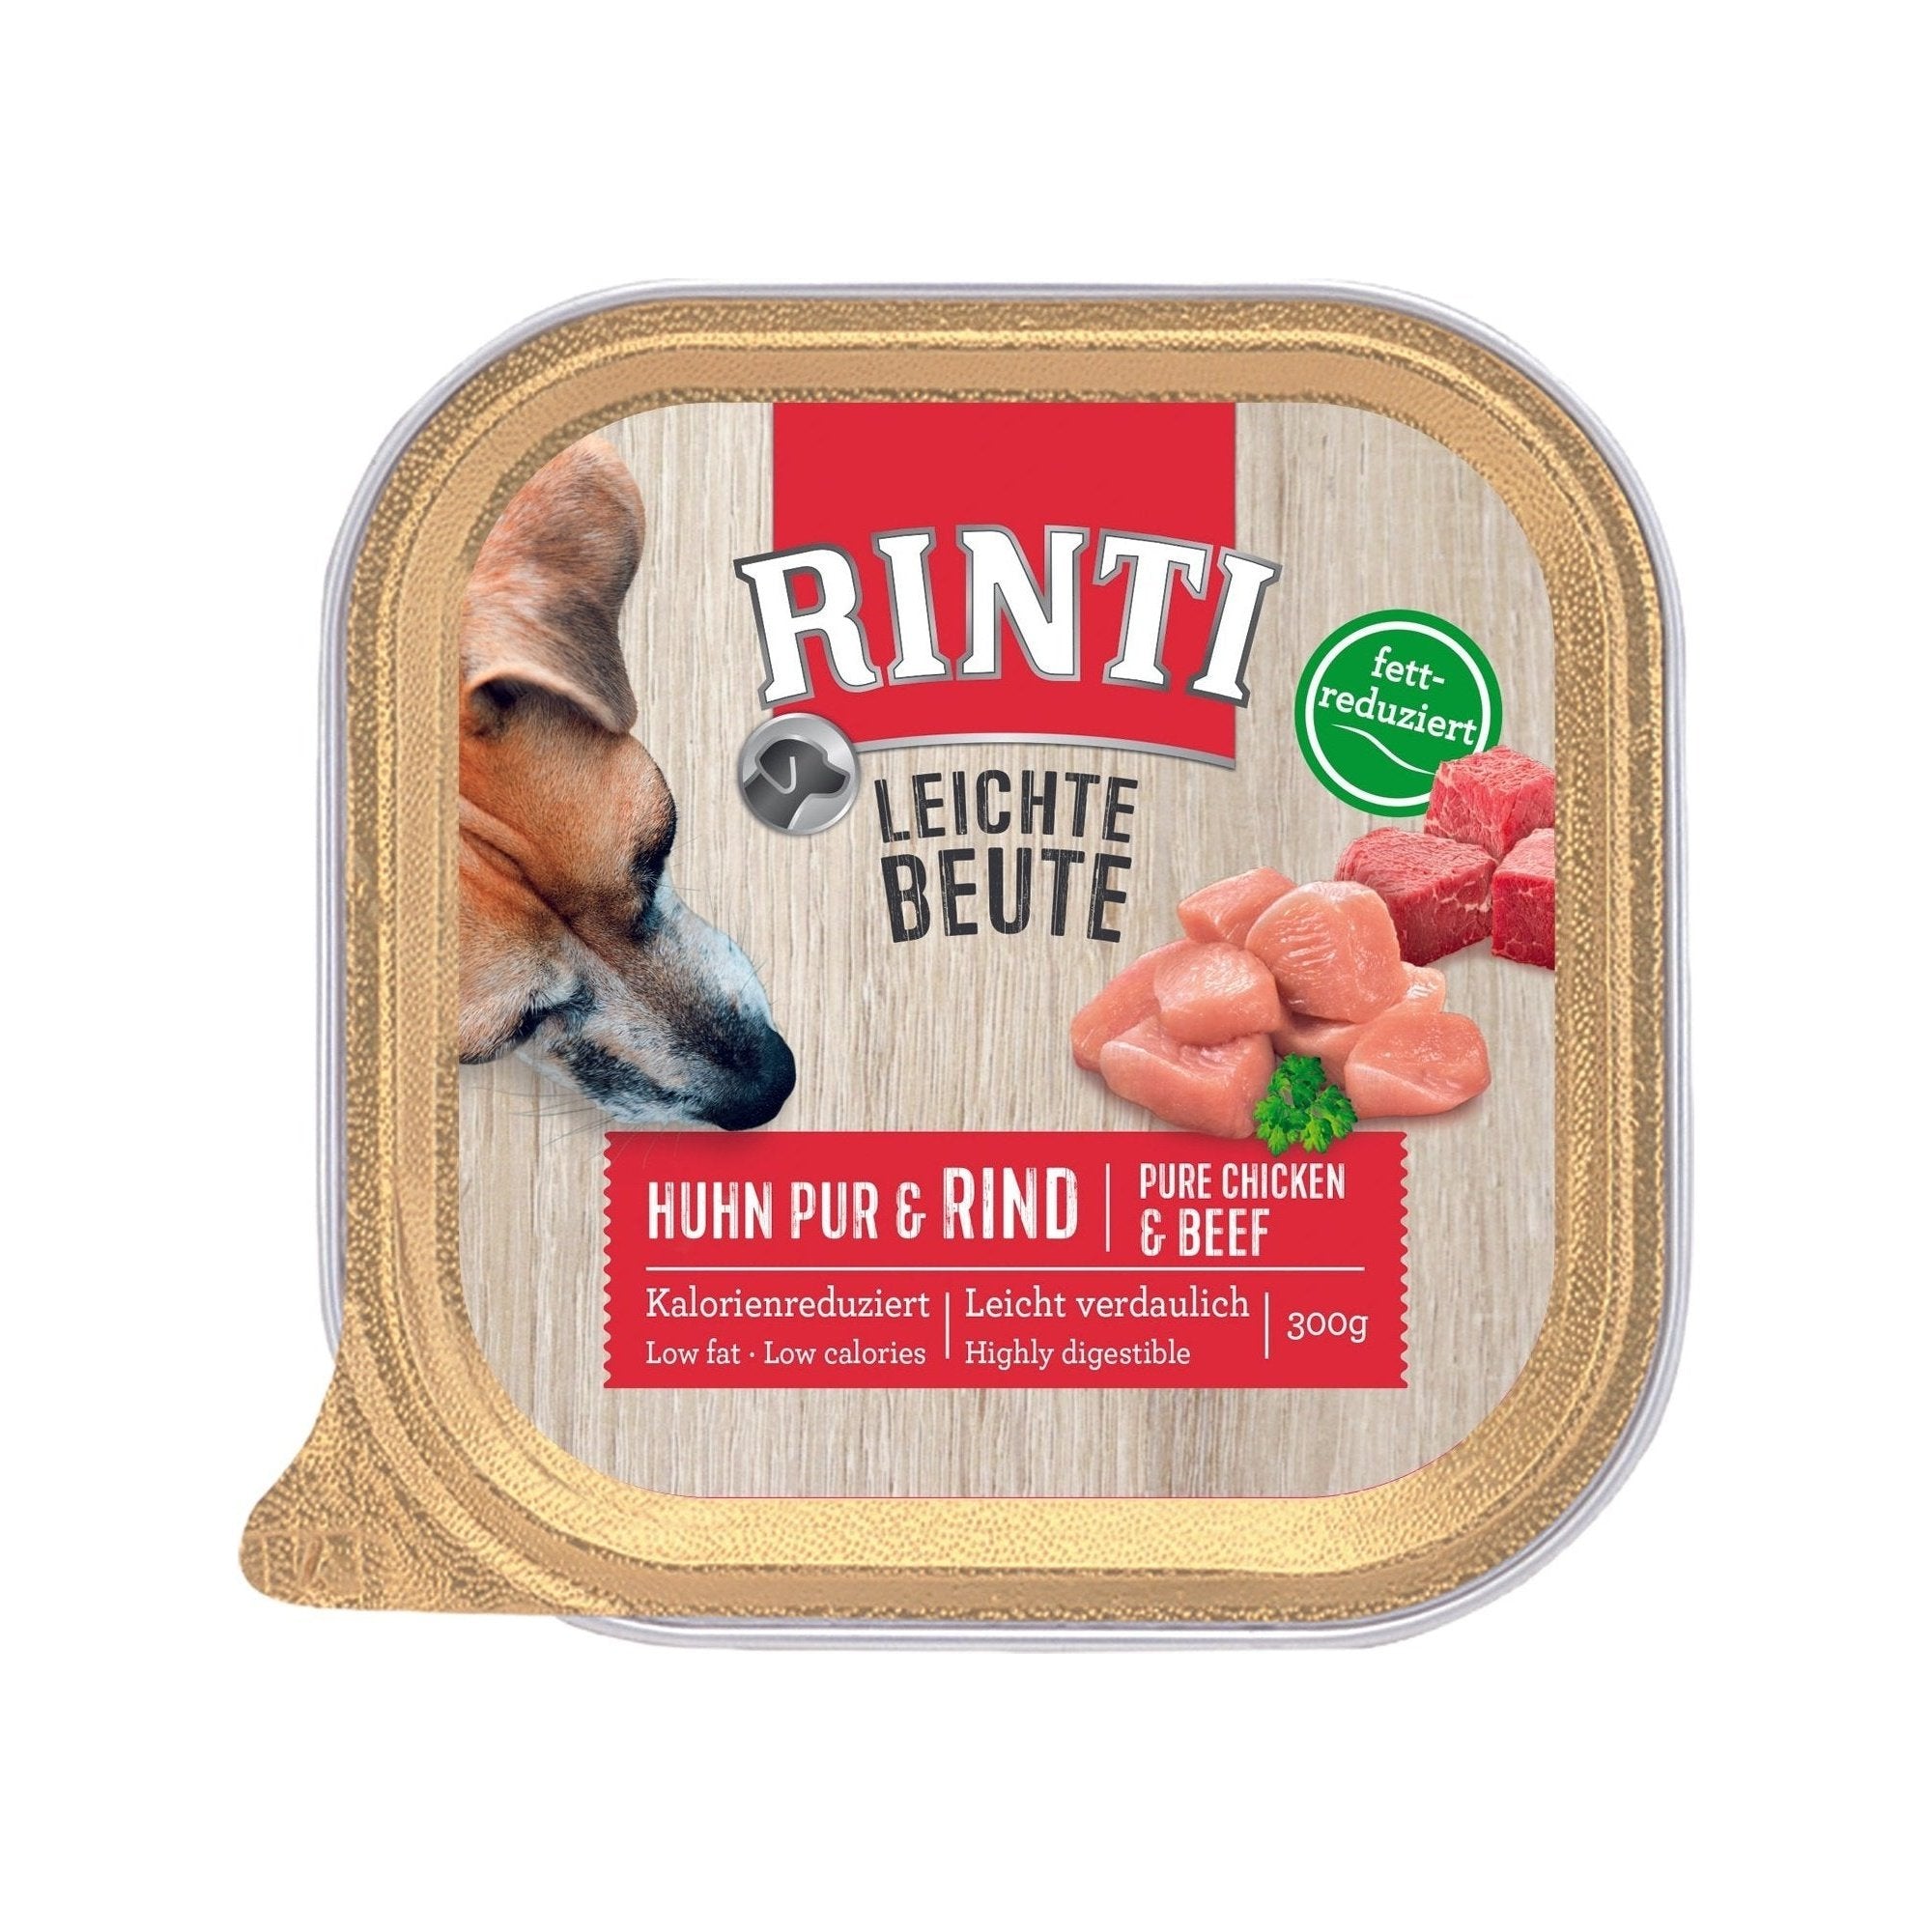 Rinti Leichte Beute Huhn Pur + Rind - zoo.de